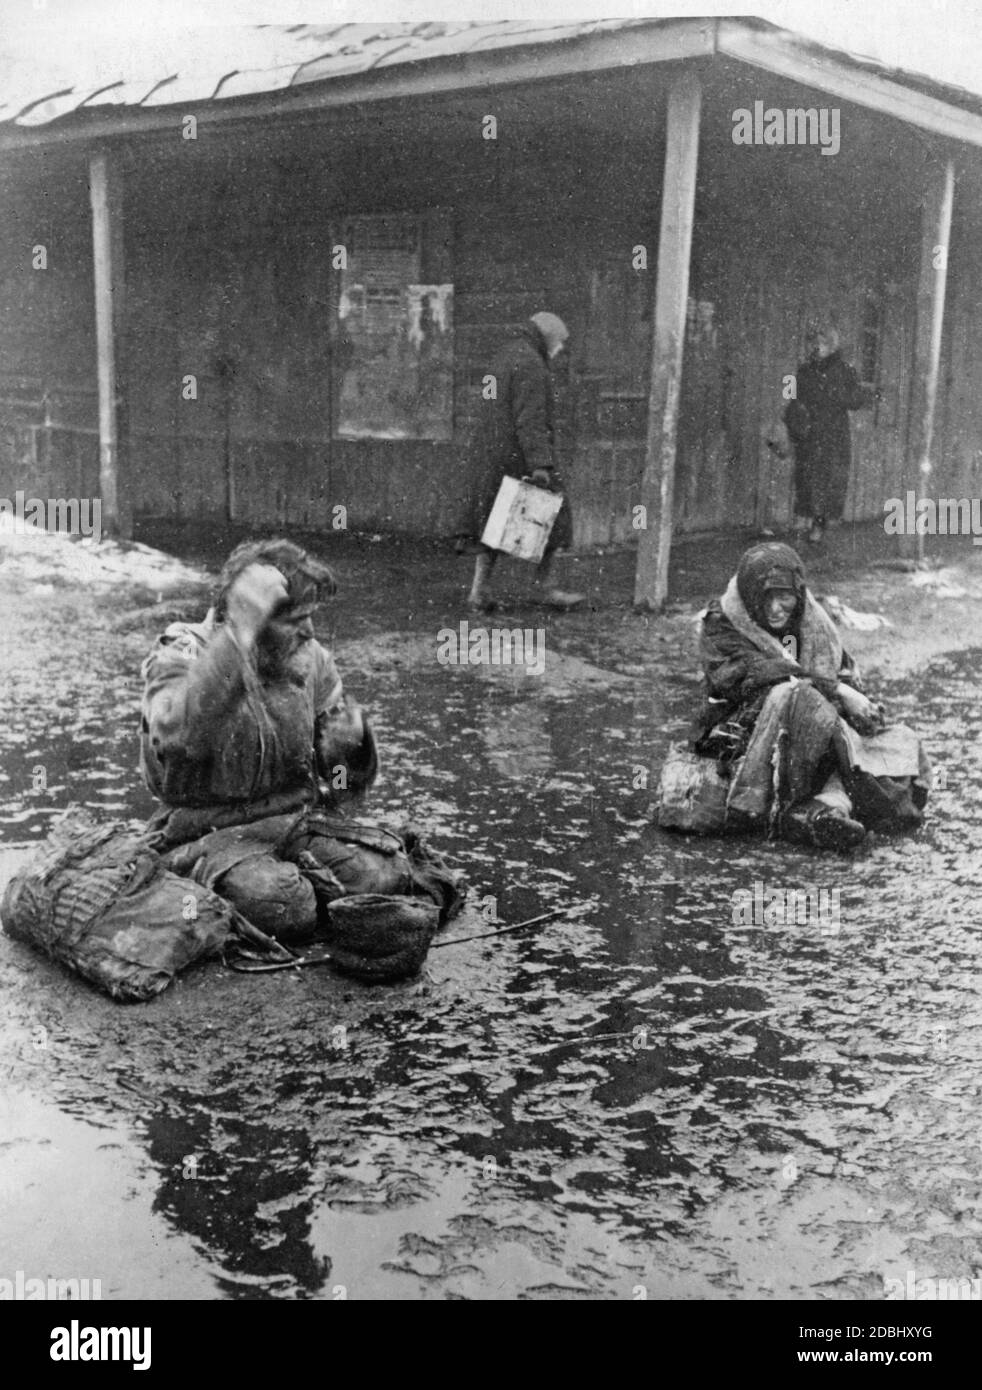 Die Hungersnot, die im Zuge der Zwangskollektivierung entstand, verursachte die Verarmung und den Hunger vieler sowjetischer Bauern. Hier betteln zwei Bauern an einem Bahnhof in der Wolga um Nahrung. Stockfoto